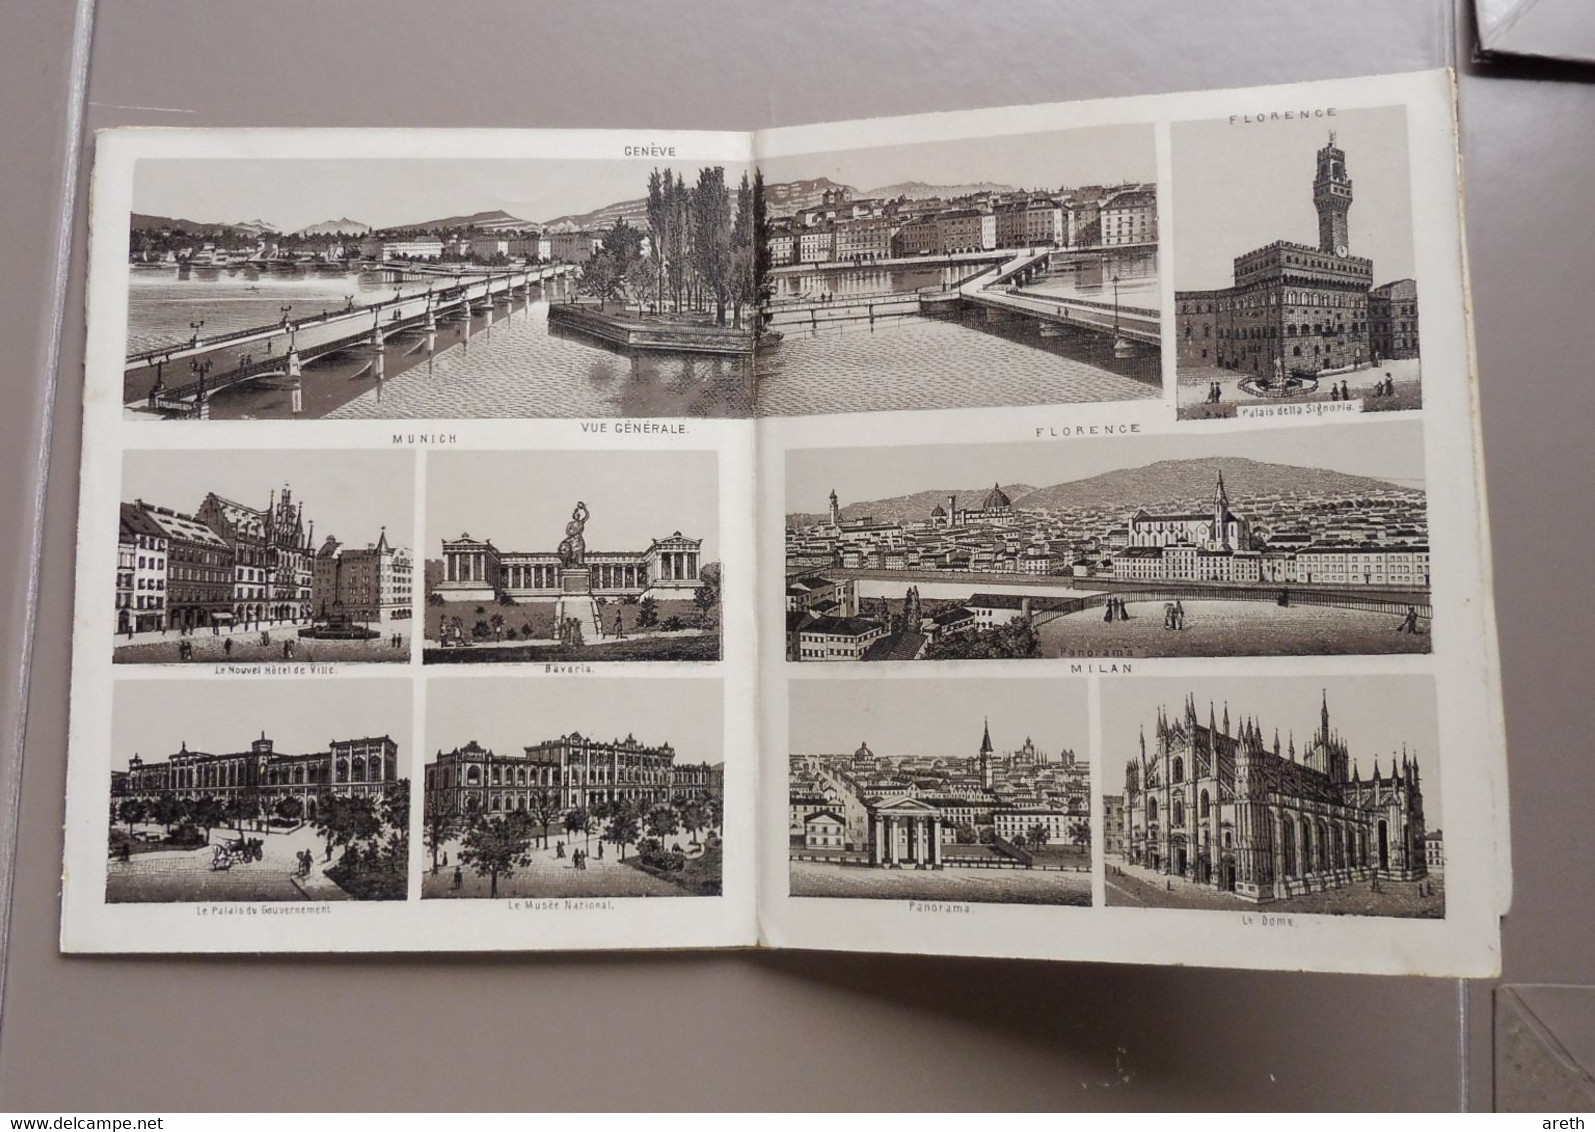 Ancien cahier contenant en dépliant des vignettes/ dessins/photos de differentes villes